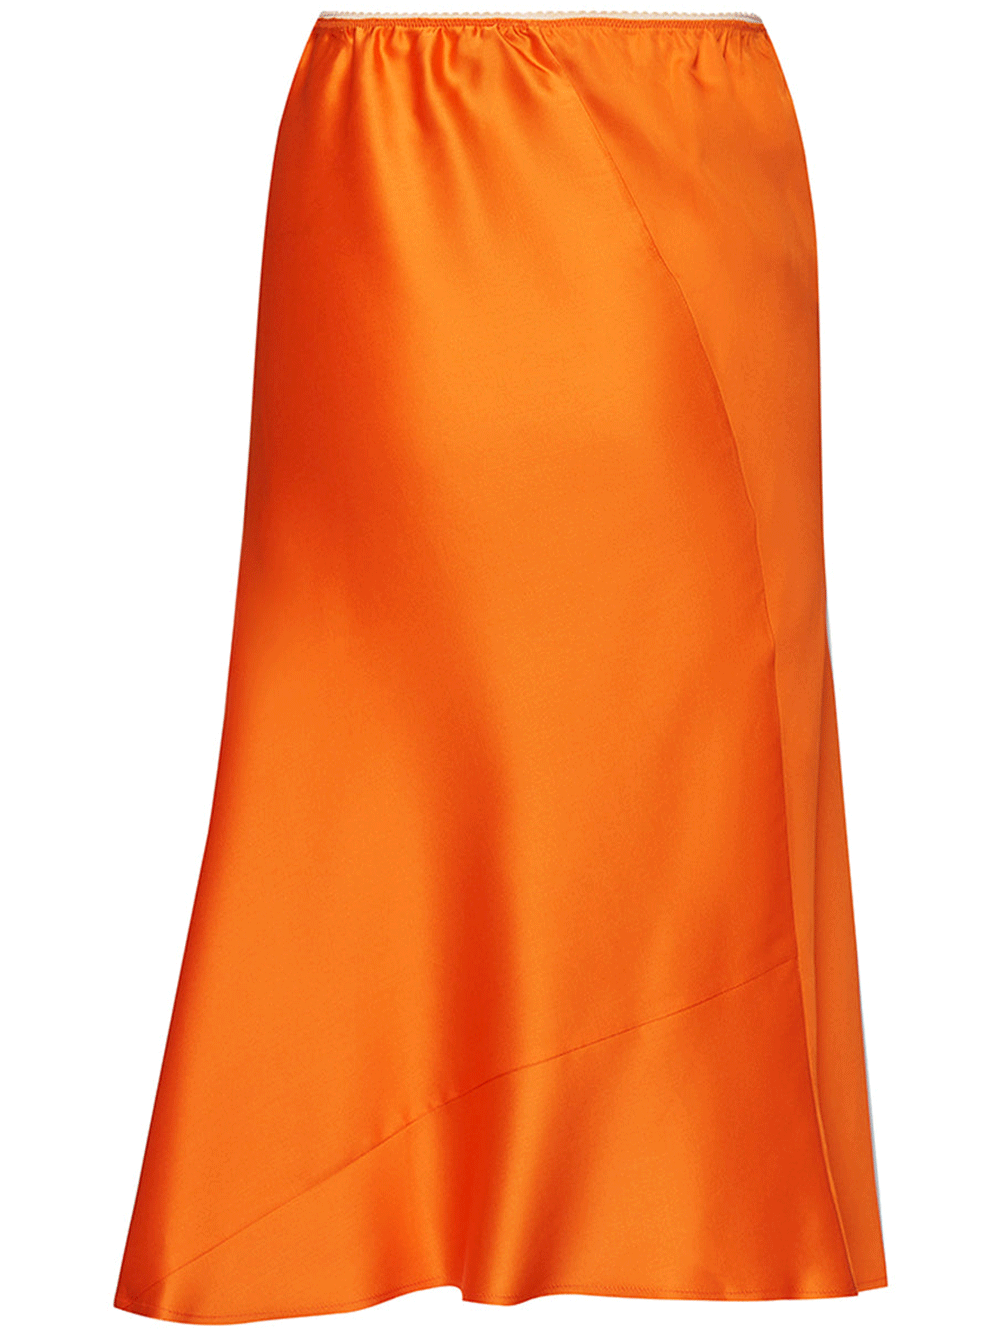 N21-Bias-Cut-Skirts-Orange-2